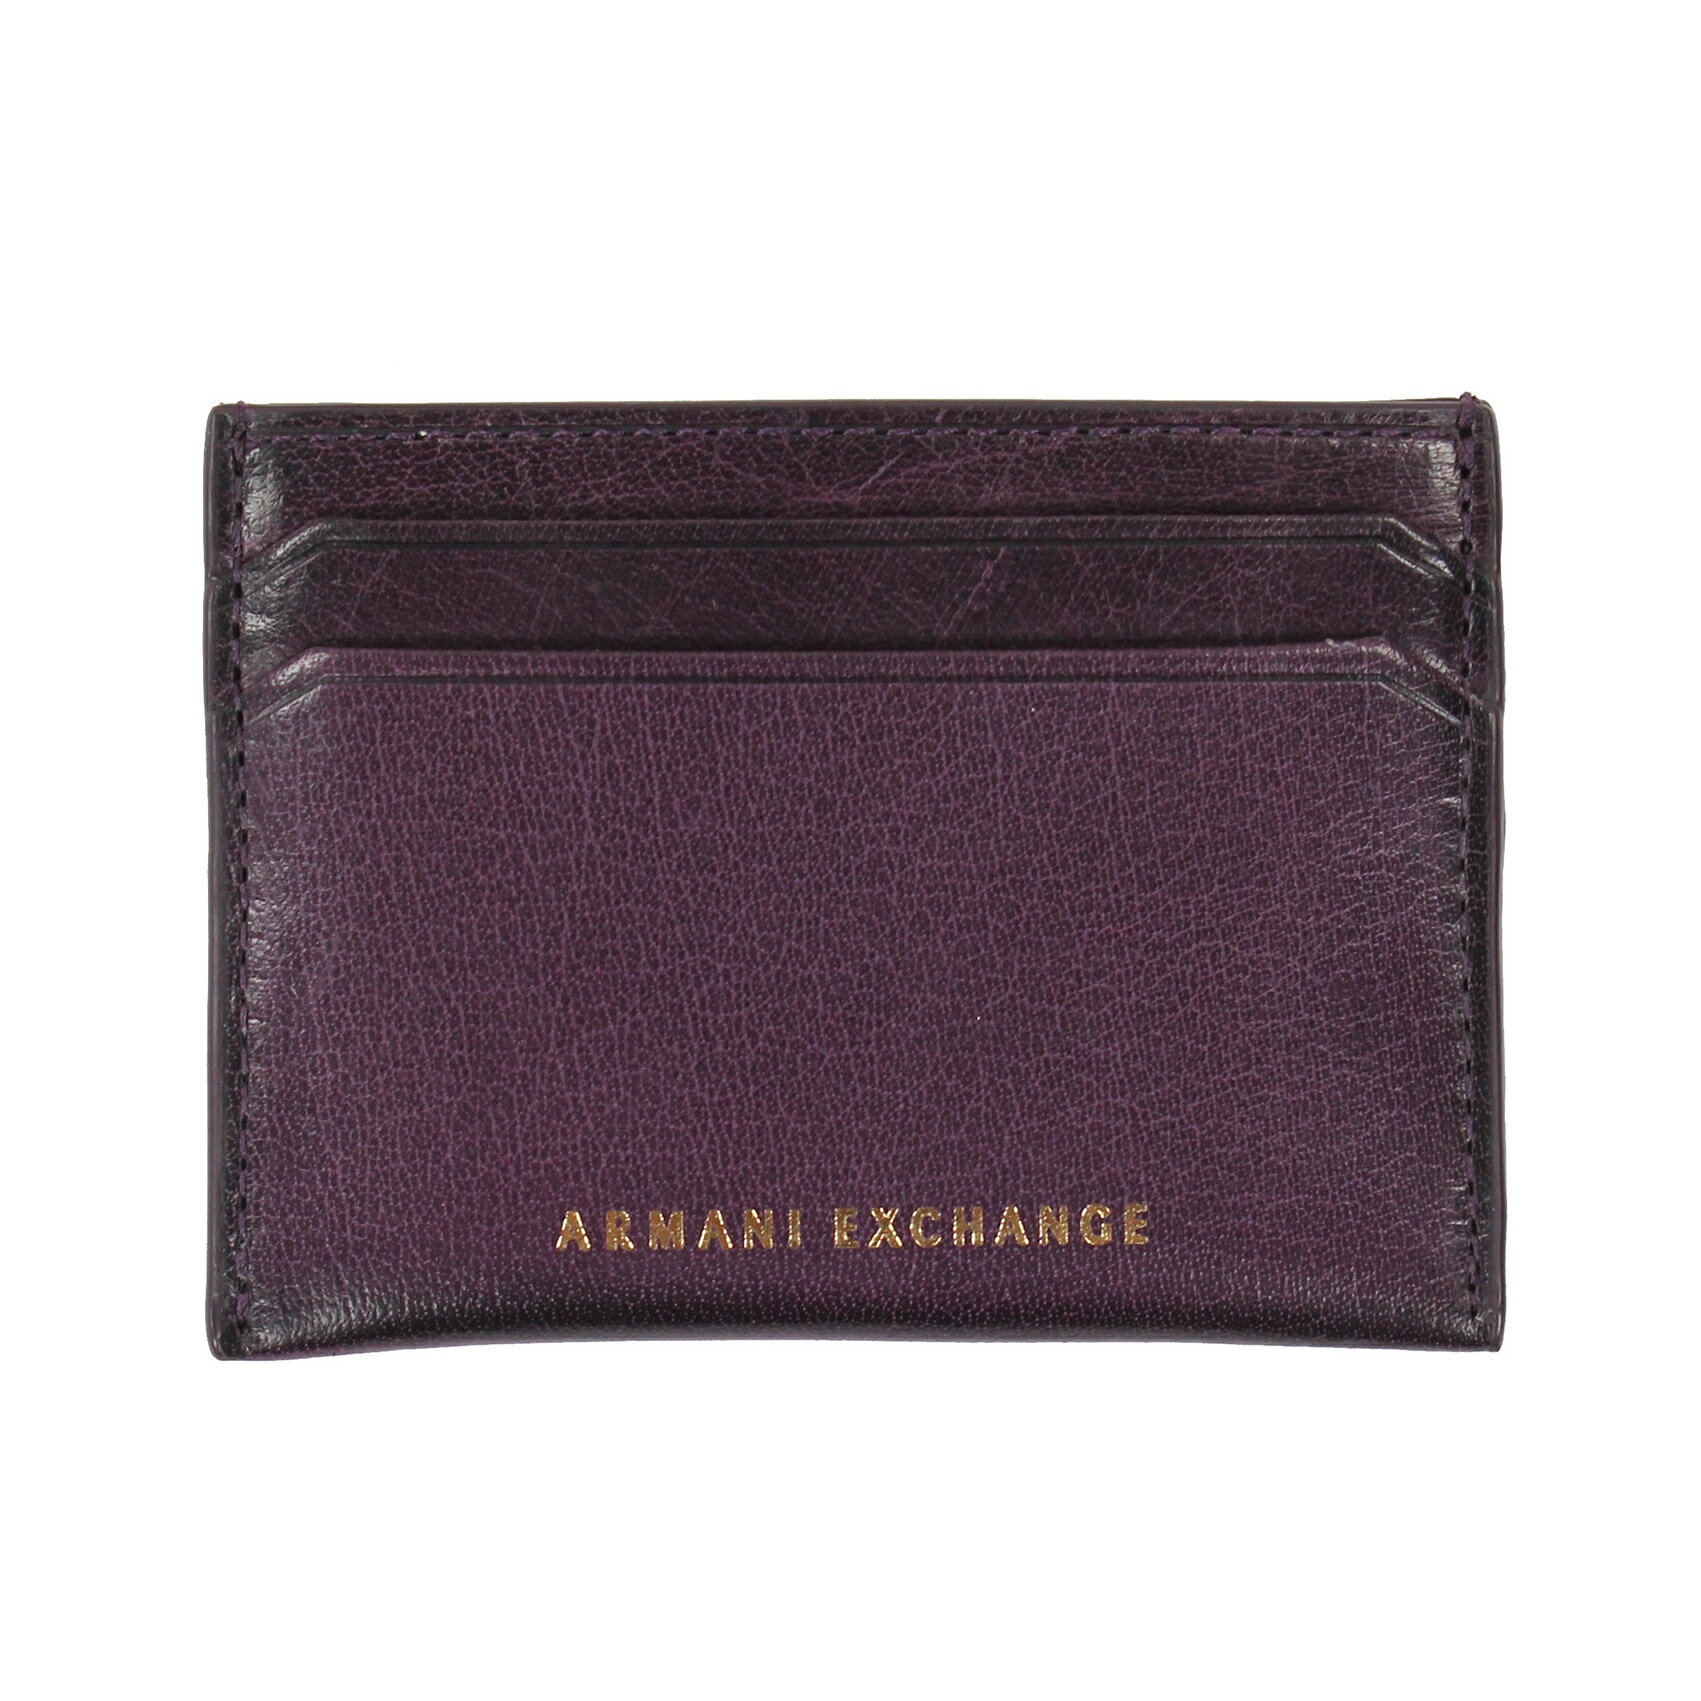 美國百分百【全新真品】Armani Exchange 名片夾 信用卡夾 logo AX 男用 證件卡夾 紫色 E655